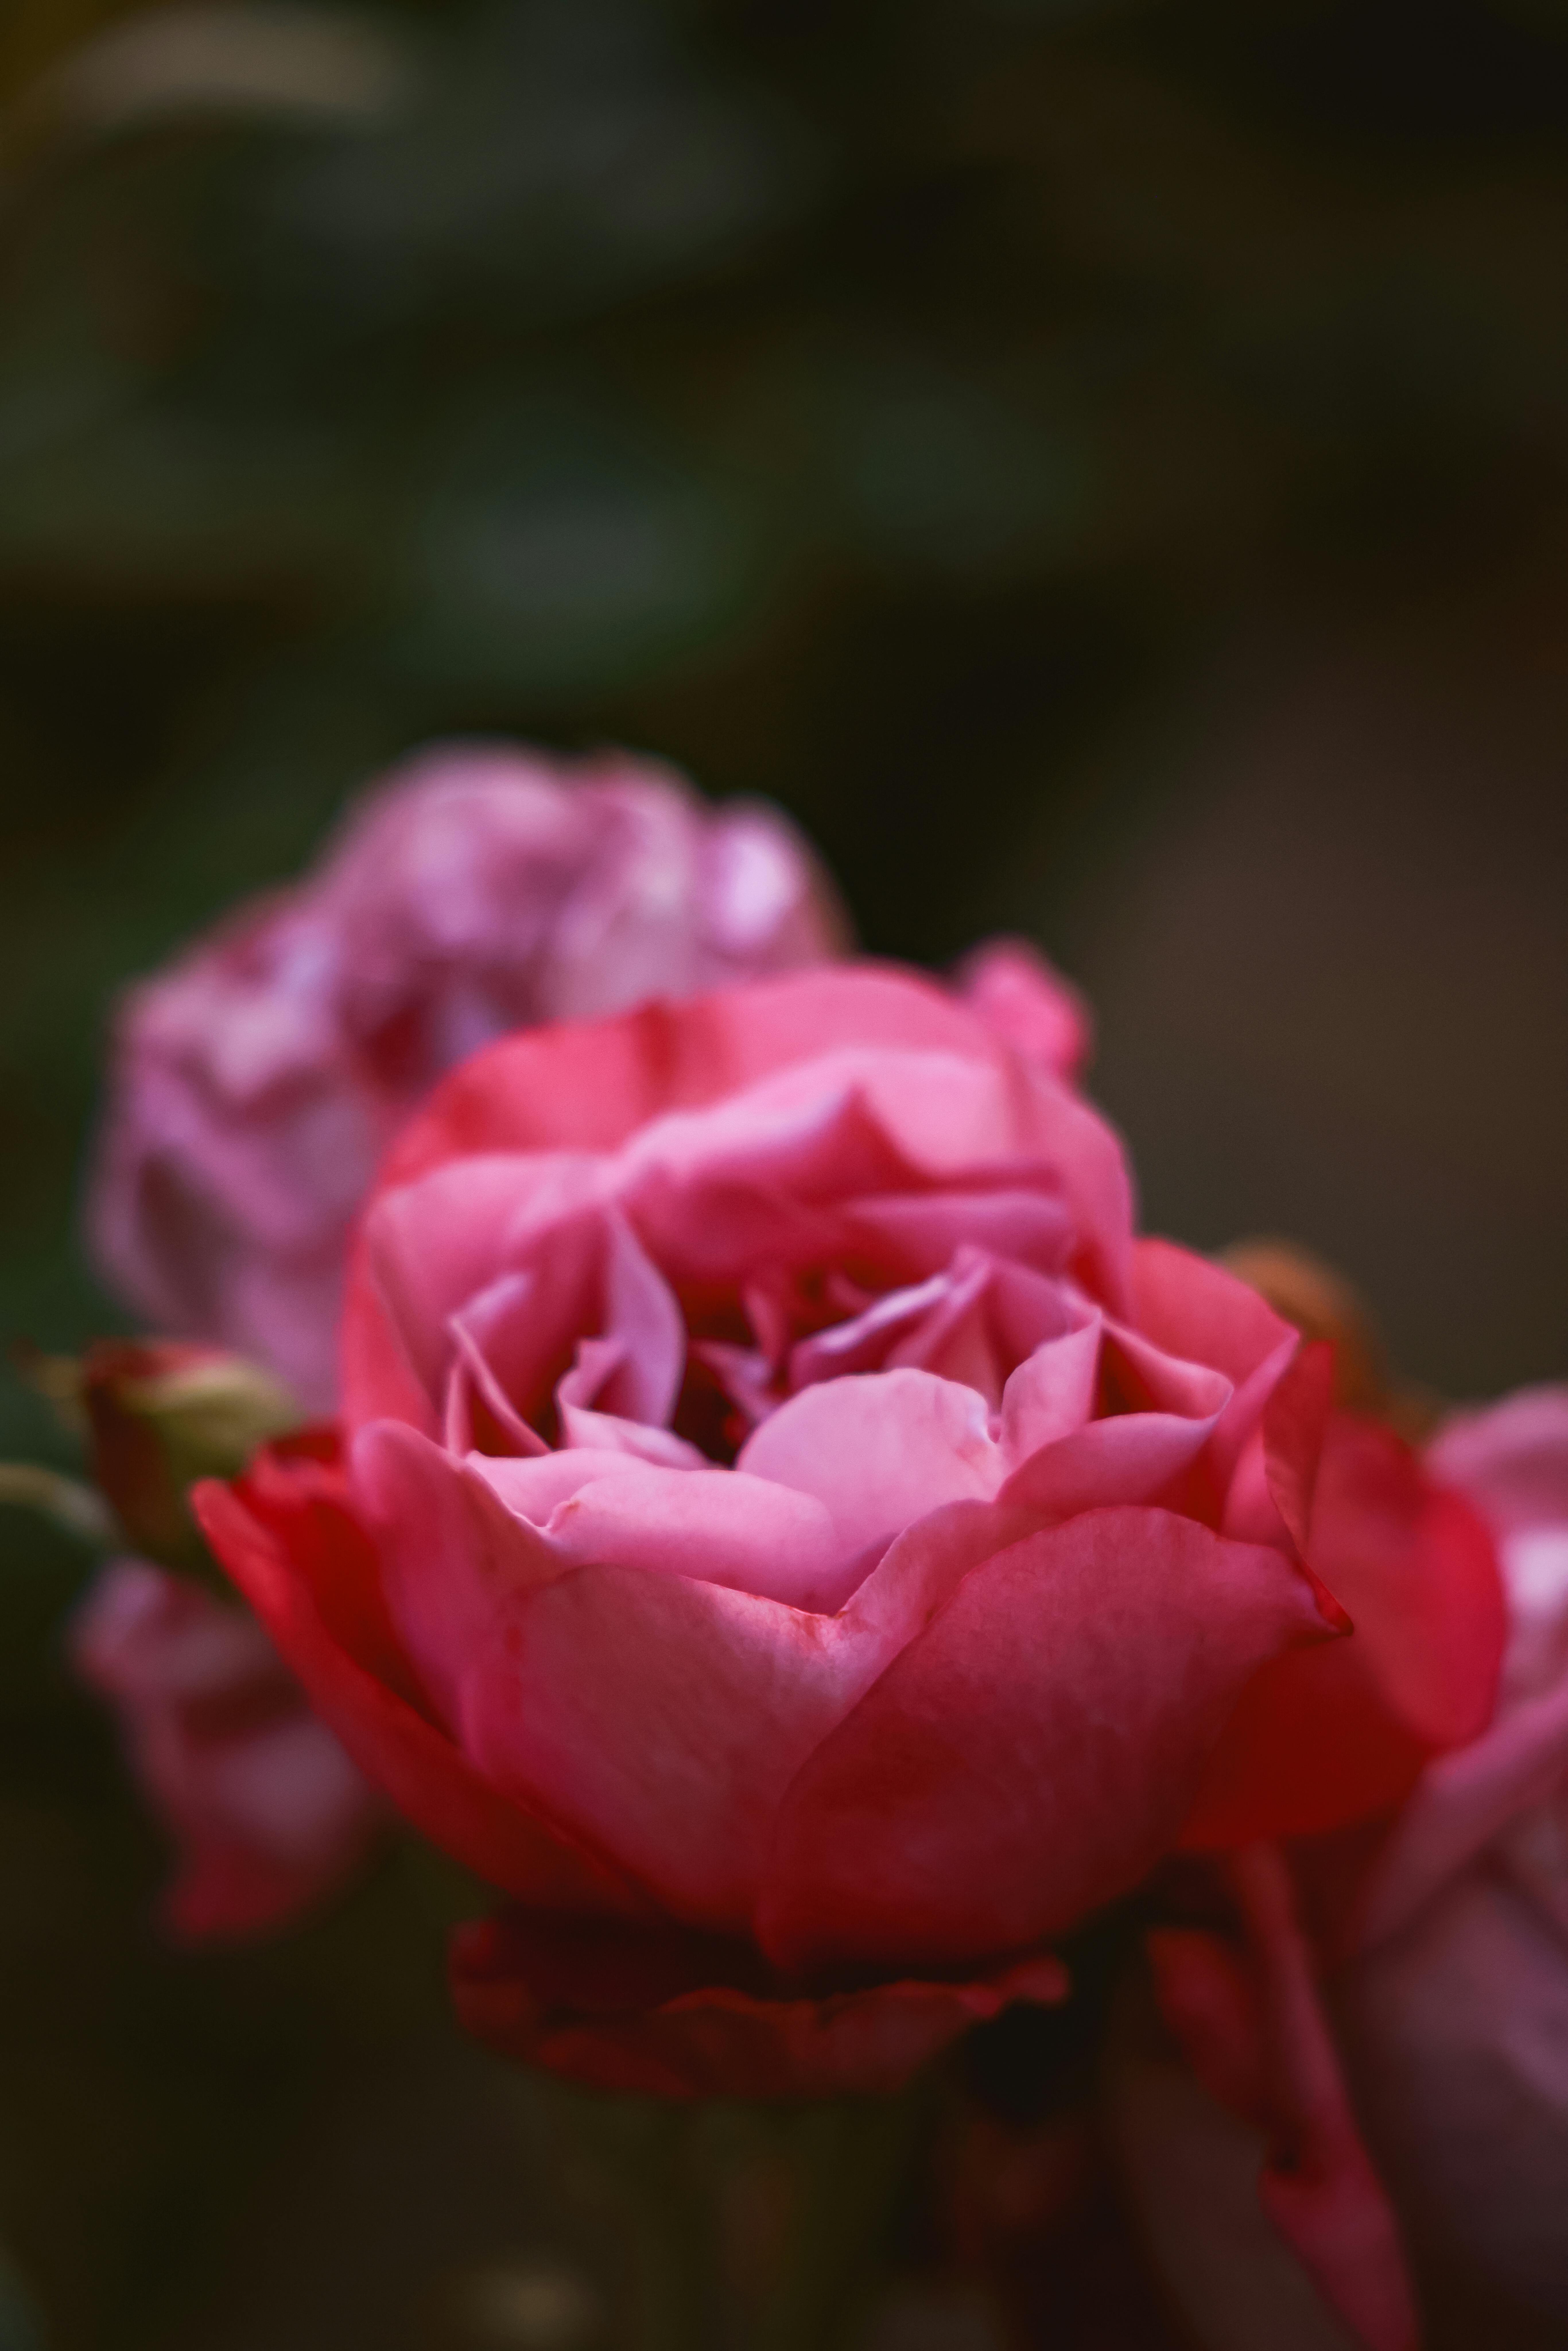 Hoa hồng cánh sen: Bạn thích những bông hoa mềm mại và thơm ngát? Hoa hồng cánh sen là một lựa chọn tuyệt vời cho bạn! Hãy xem những hình ảnh tuyệt đẹp của loài hoa này và cảm nhận sự hòa quyện giữa vẻ đẹp và mùi thơm ngát của nó.